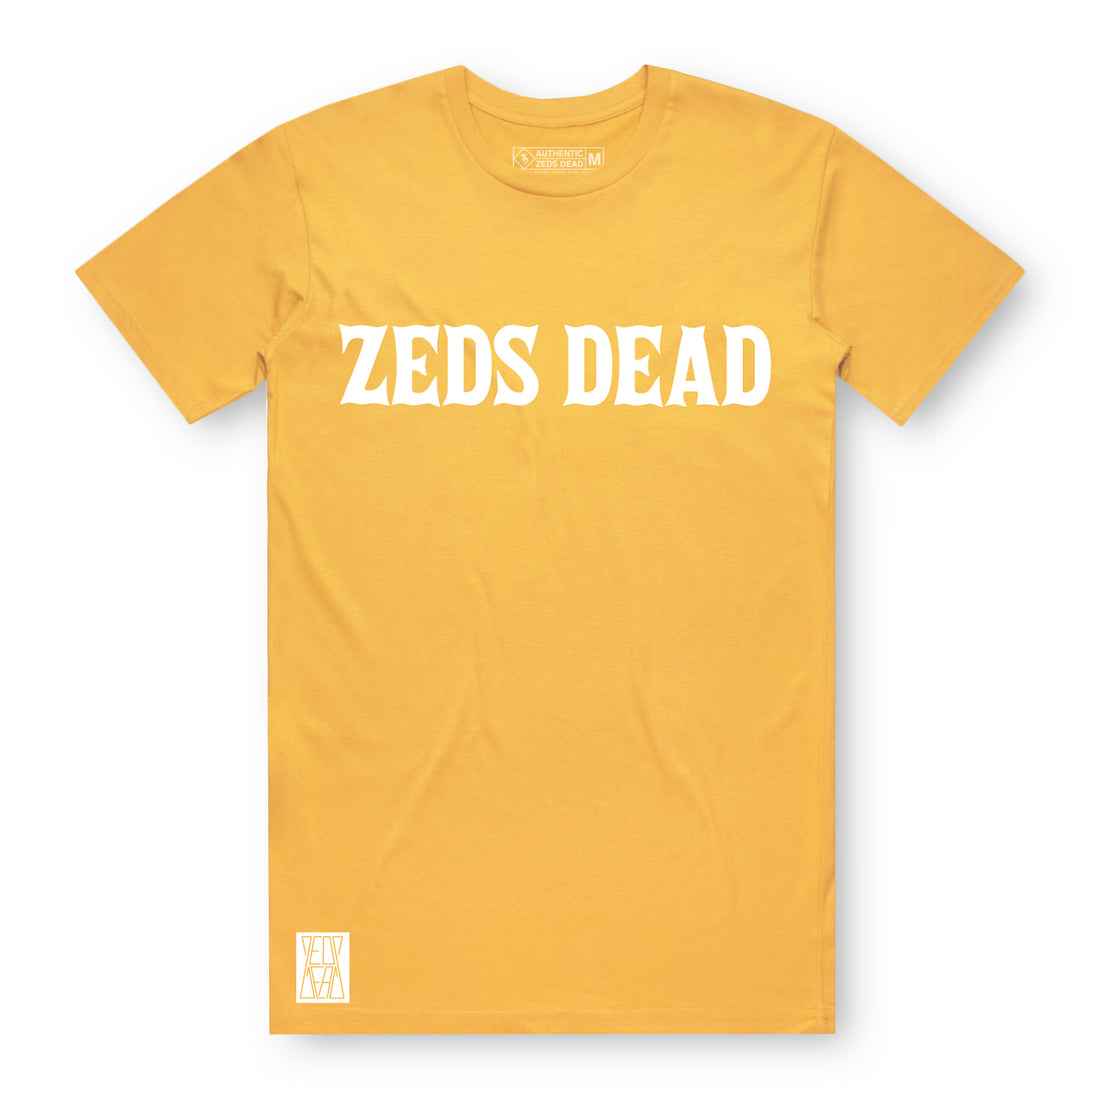 Zeds Dead - Clazzic - Gold Tee